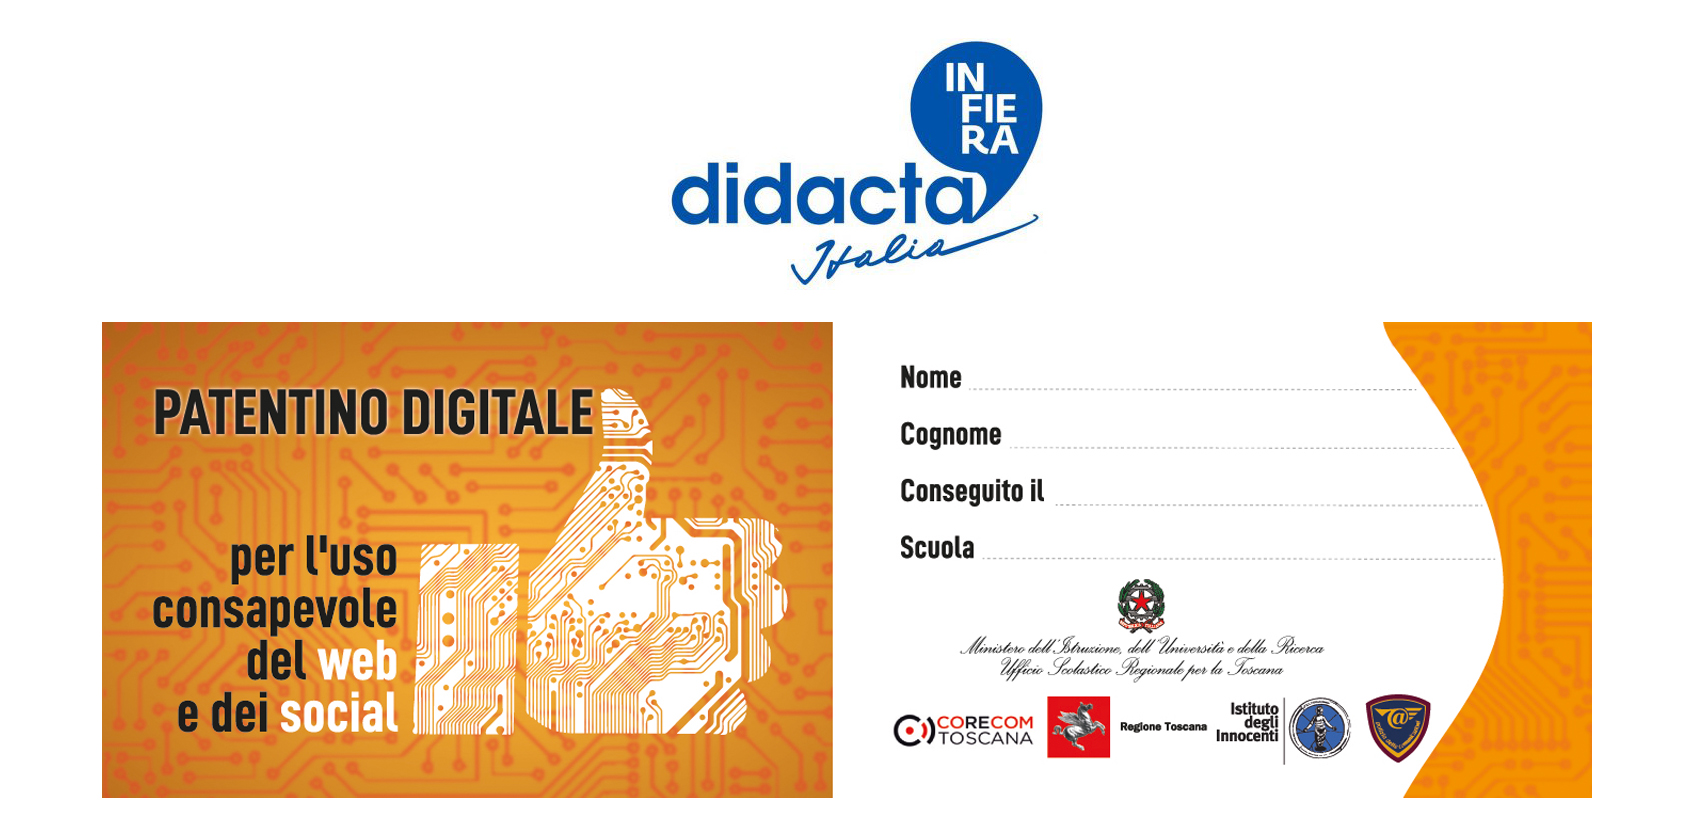 Il patentino digitale a Didacta - venerdì 11 ottobre